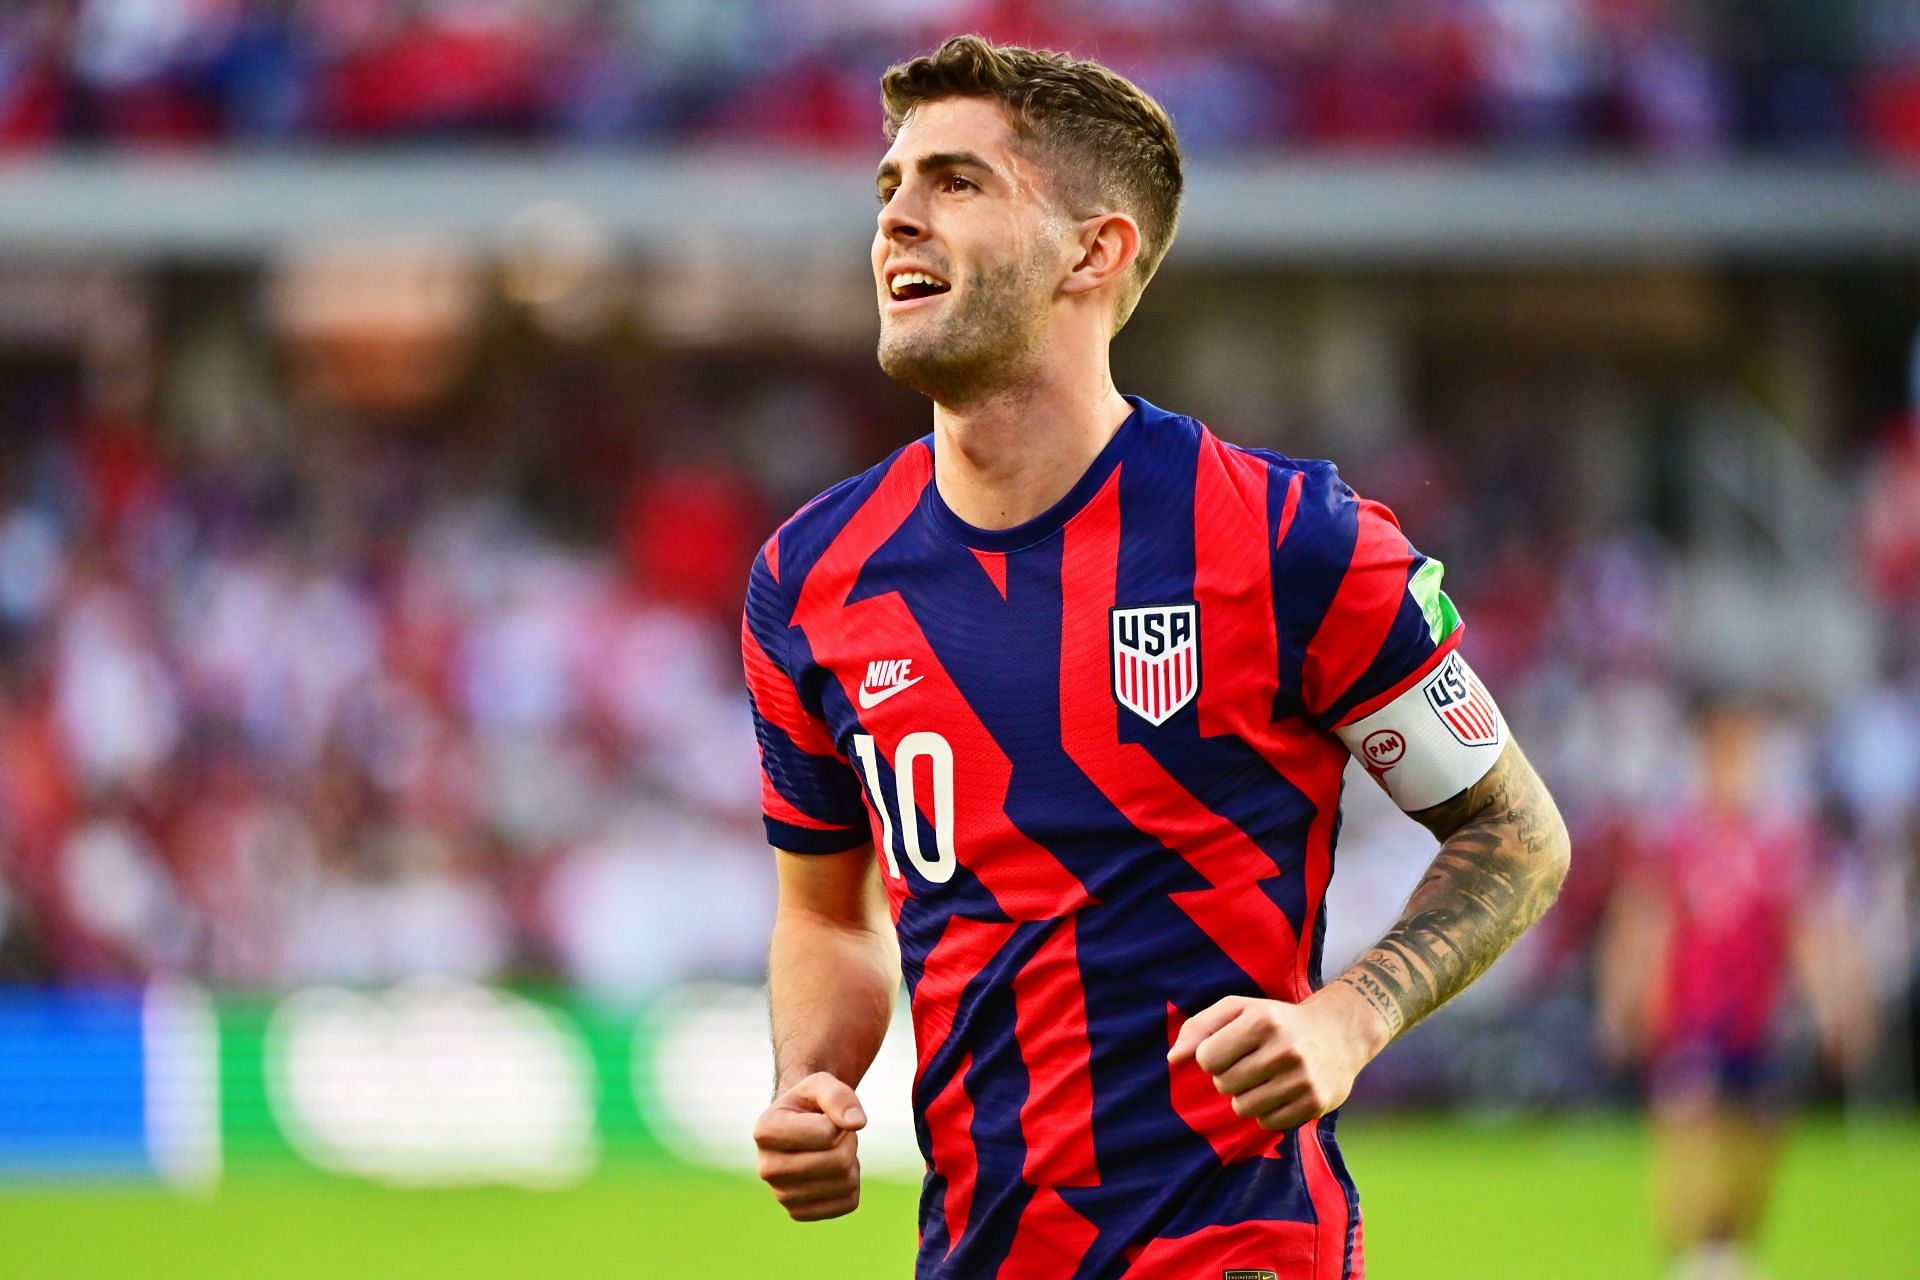 USA face Costa Rica on Thursday